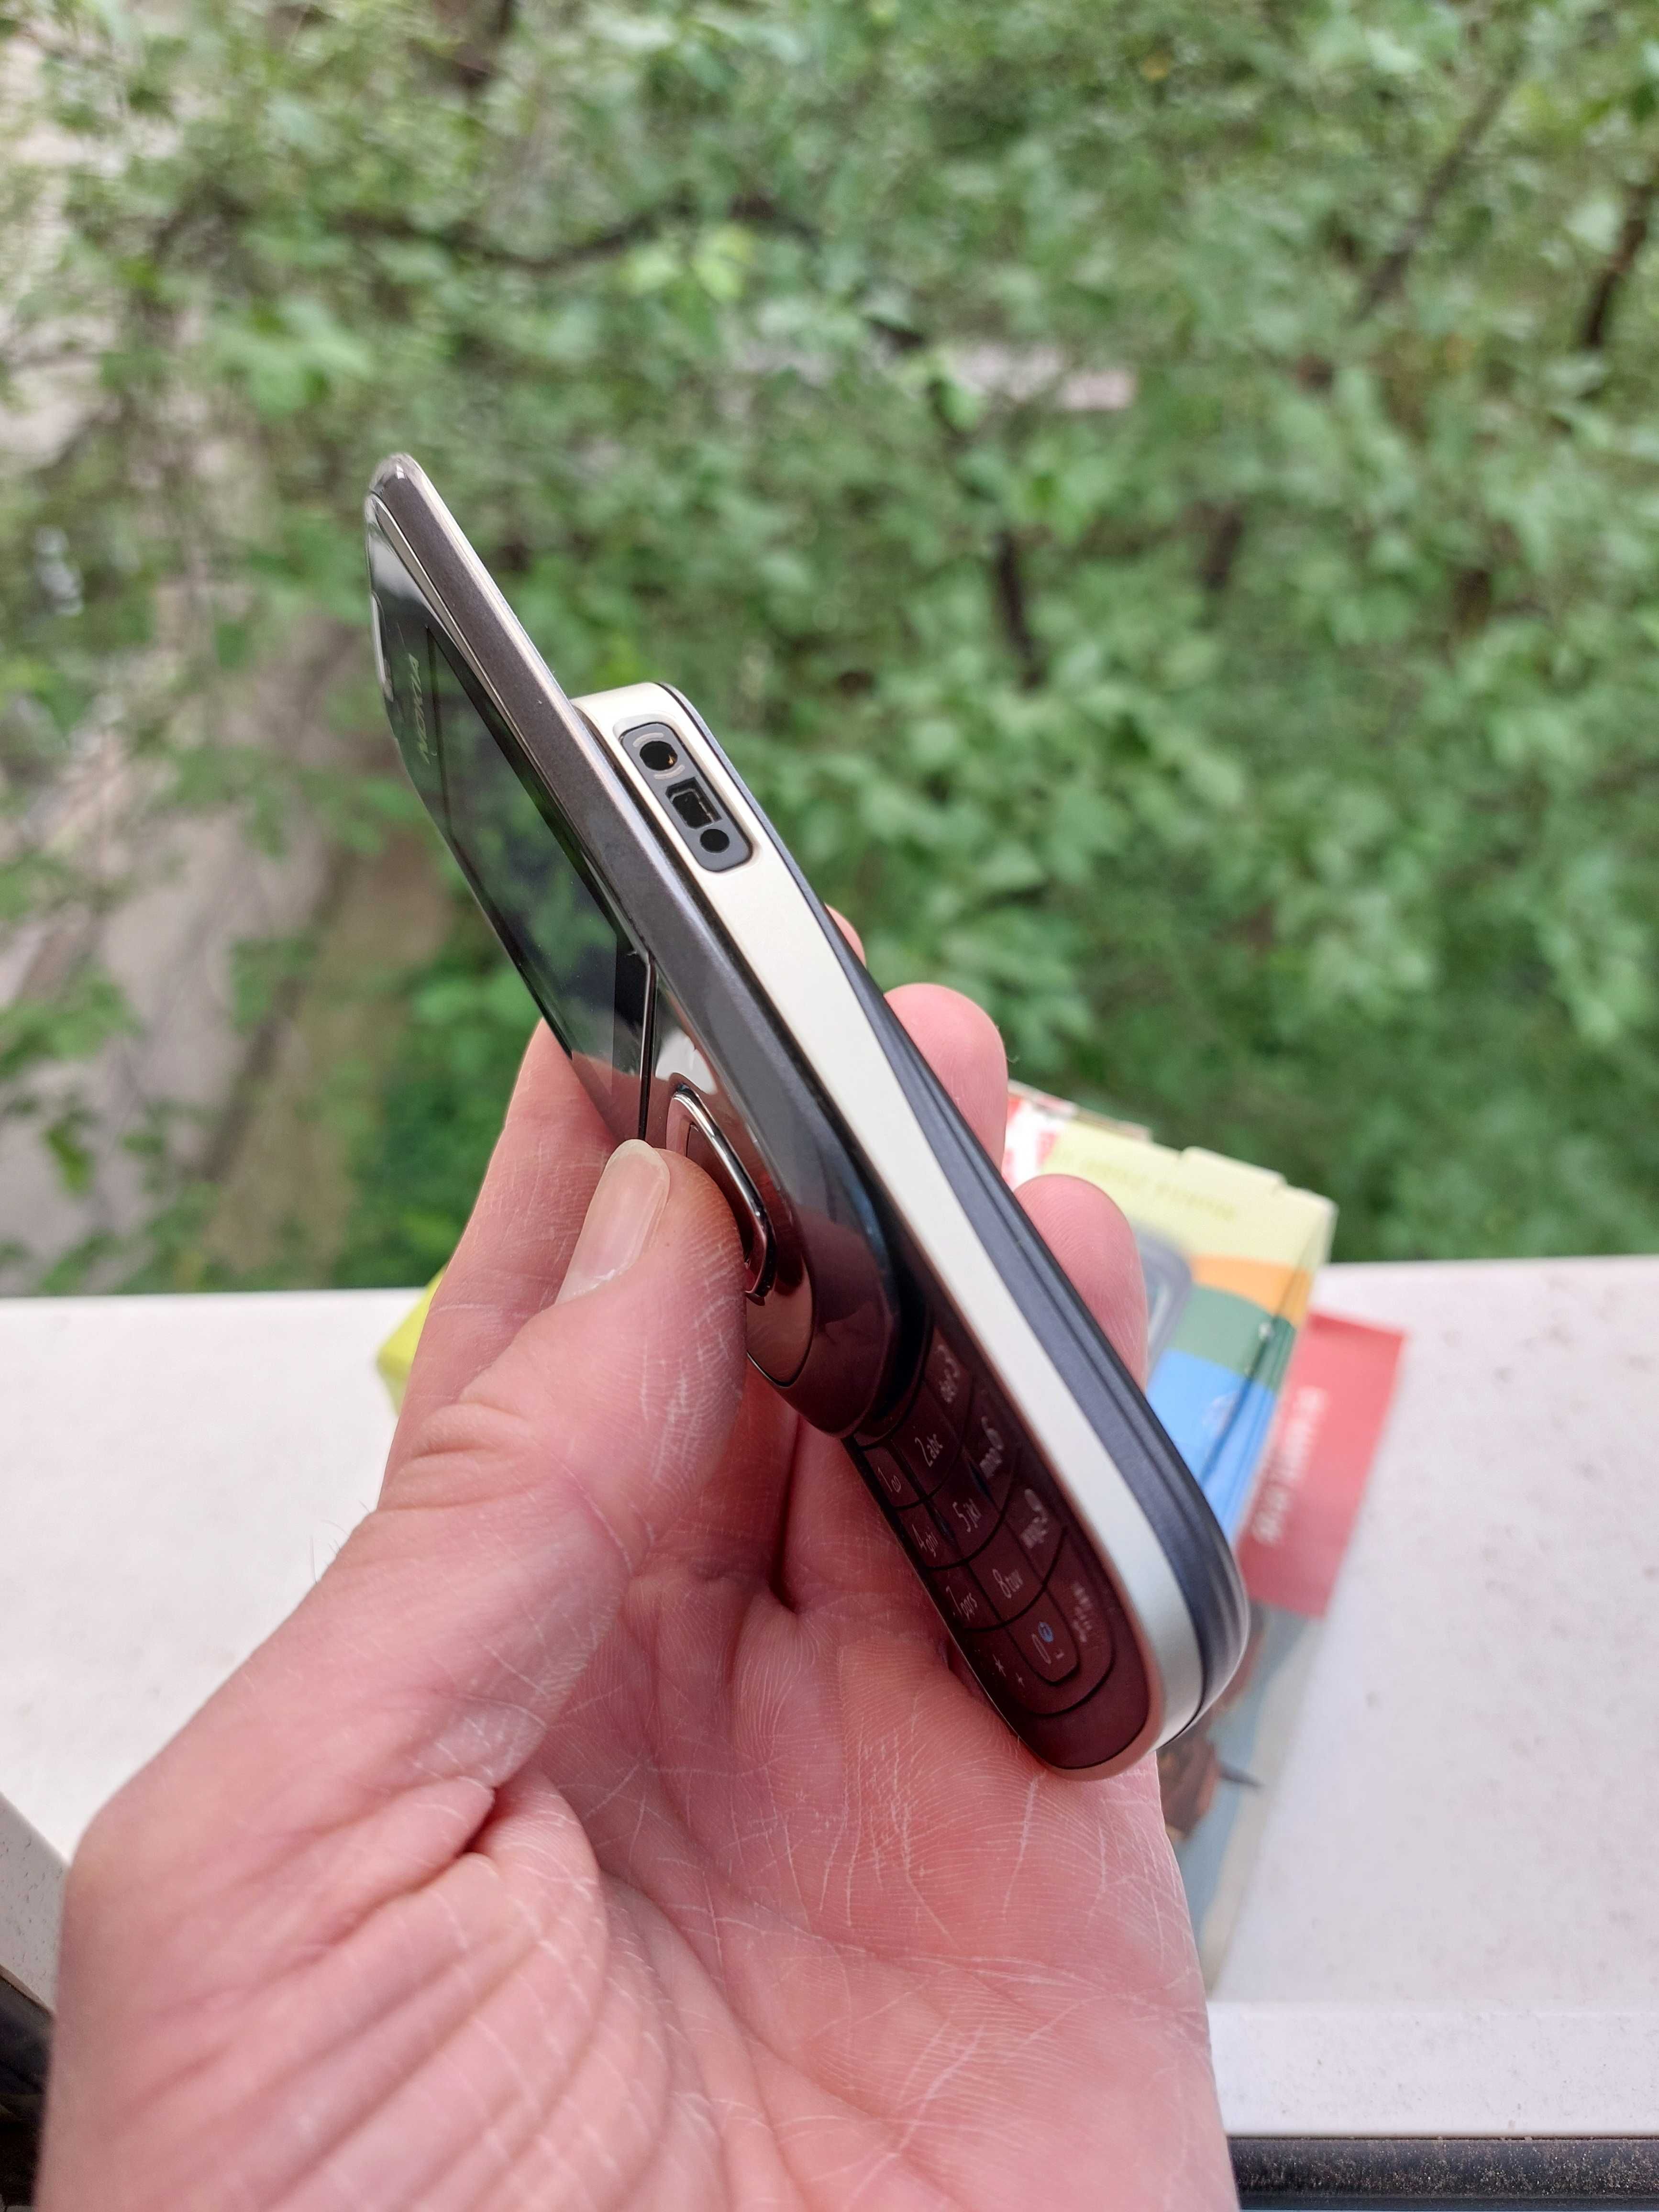 Nokia 2680 orig. Ungaria decodat la cutie cu accesorii stare f buna